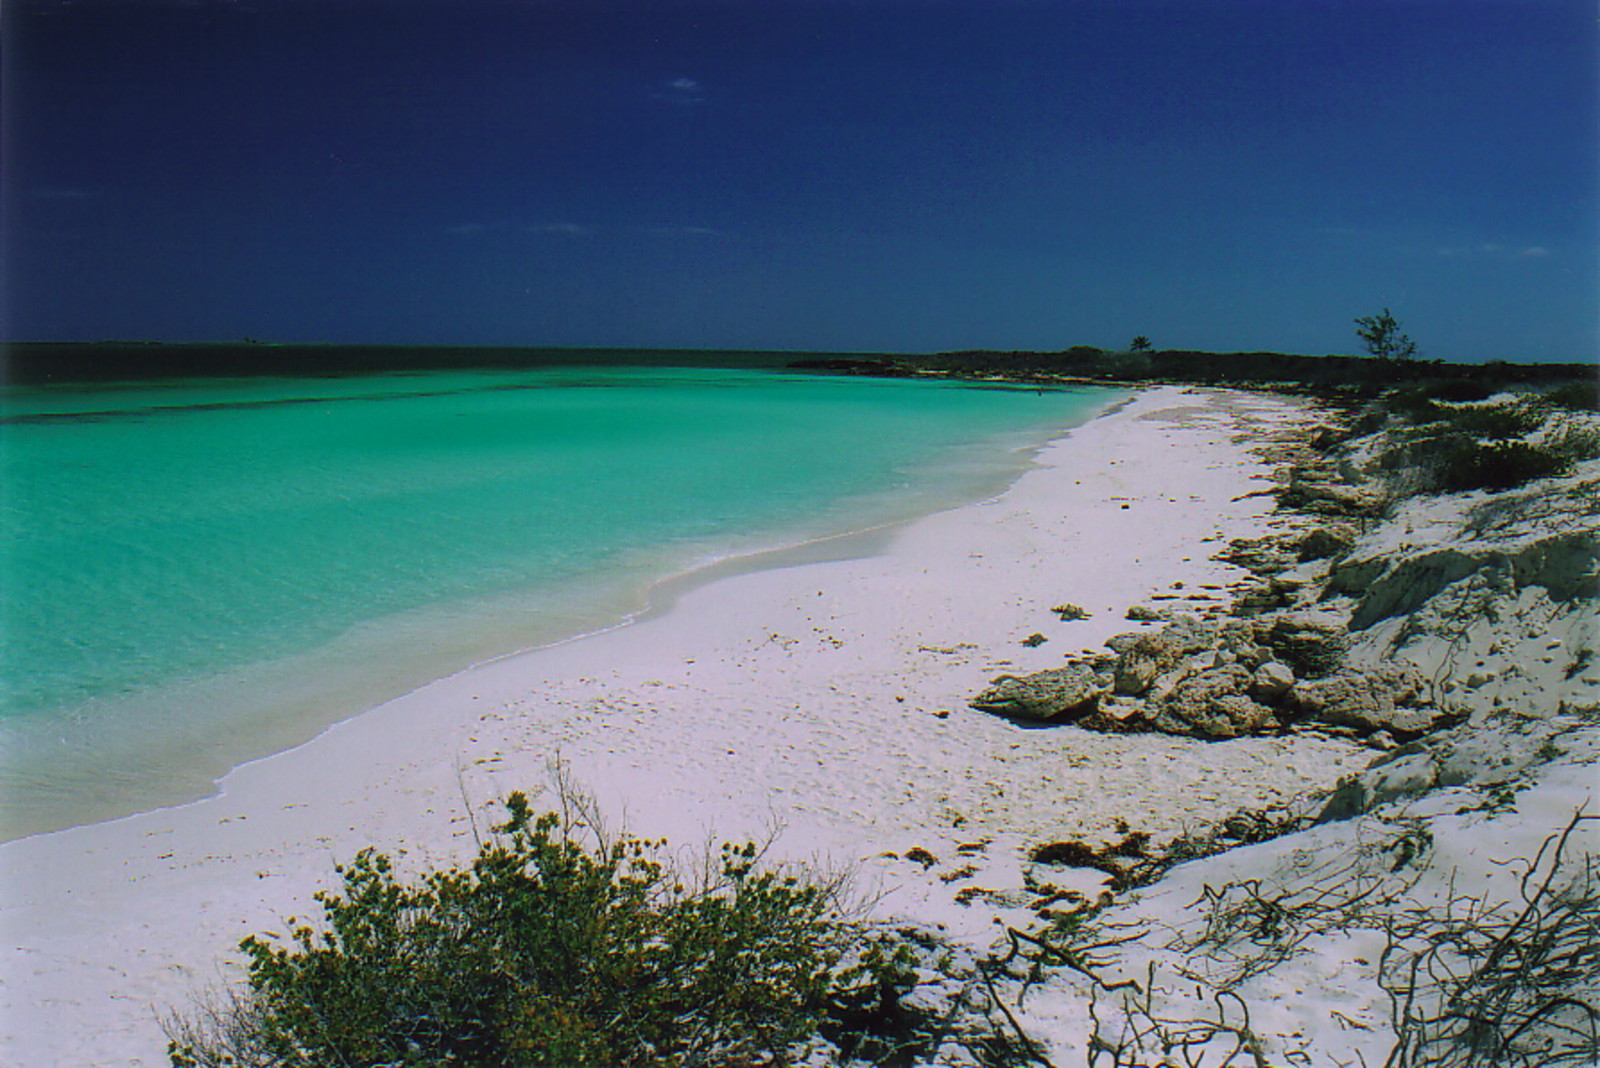 Playa Perla Blancha